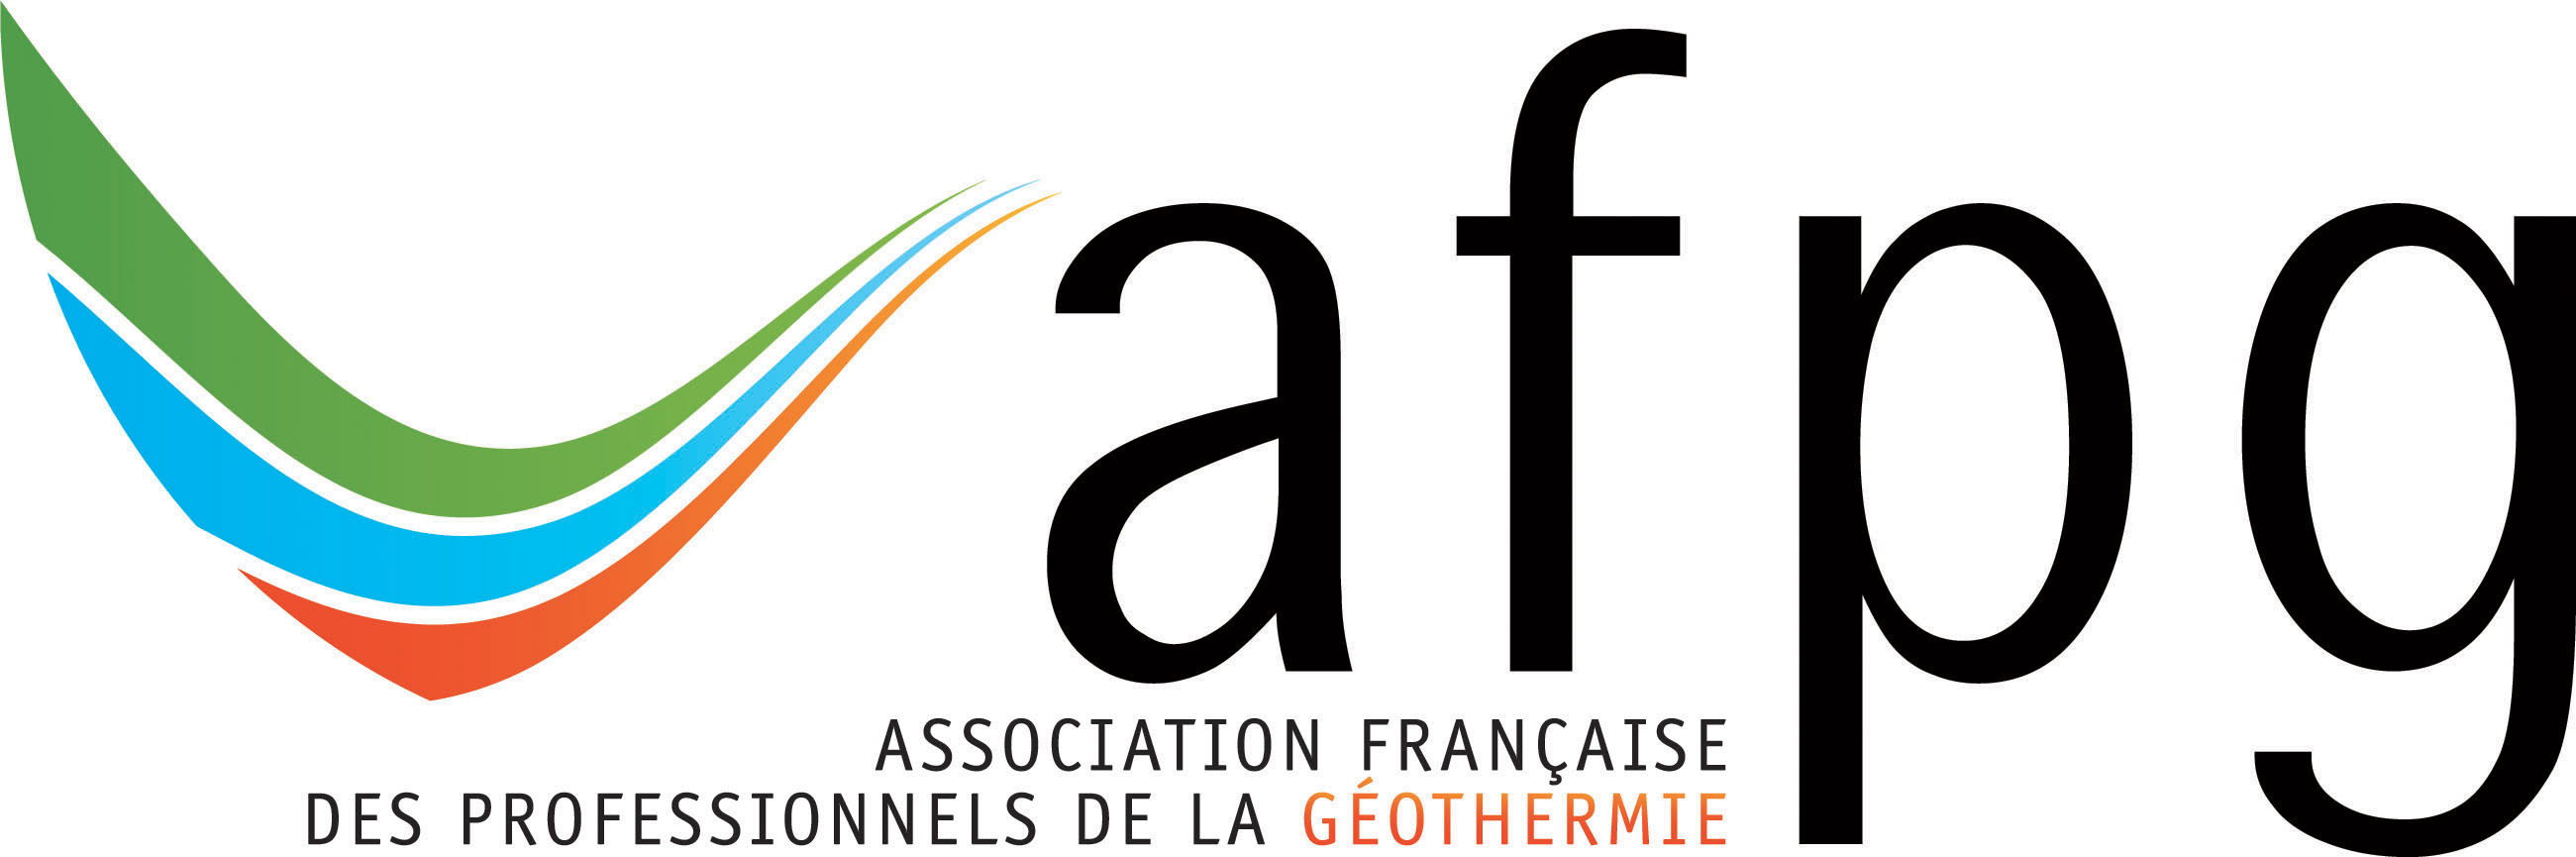 L'Association Française des Professionnels de la Géothermie (AFPG)